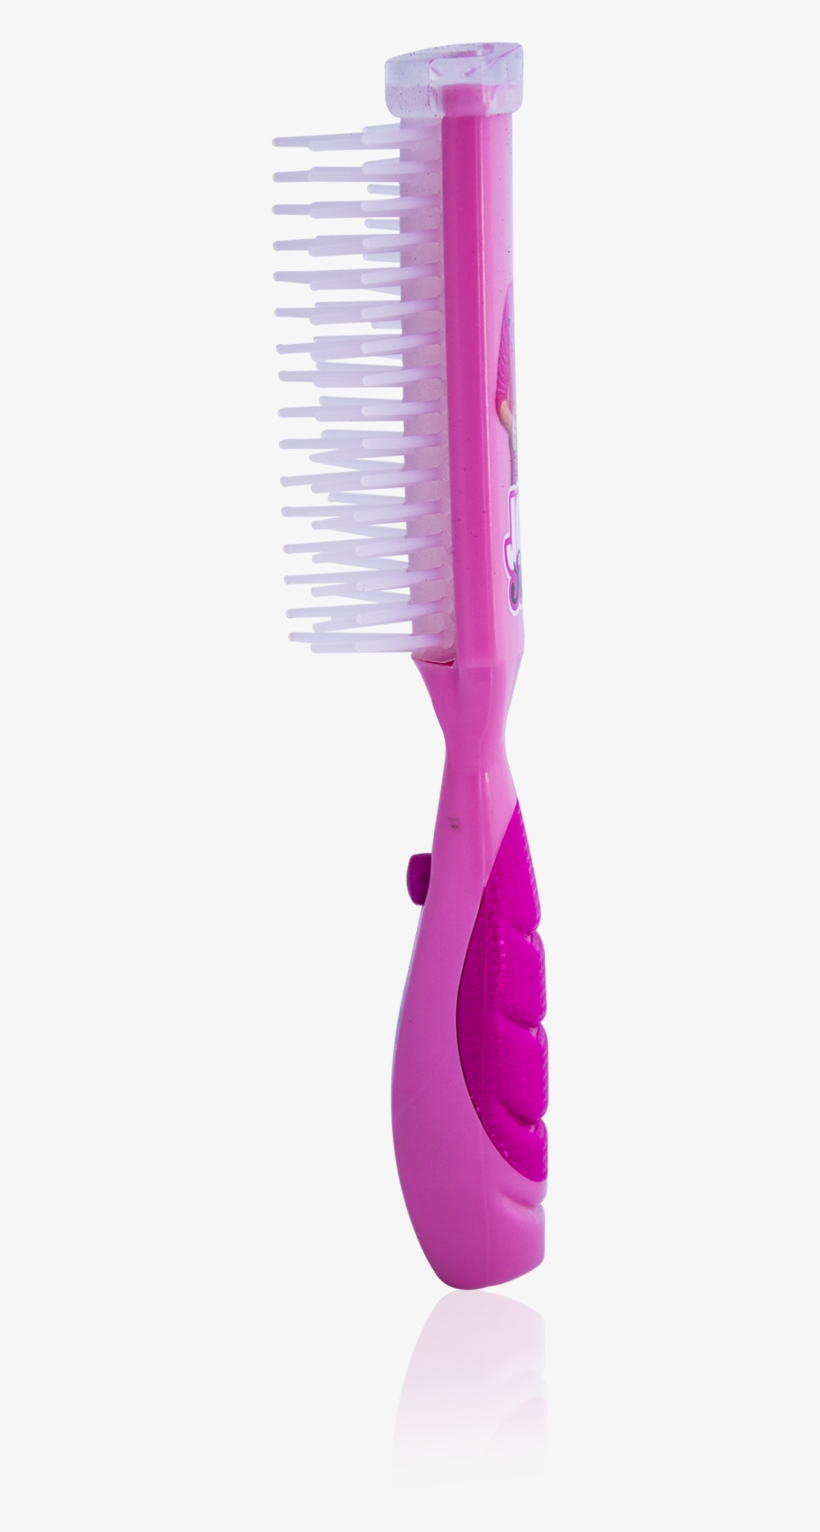 Load Image Into Gallery Viewer, Jojo Siwa Singing Hairbrush - Hairbrush, transparent png #5202237